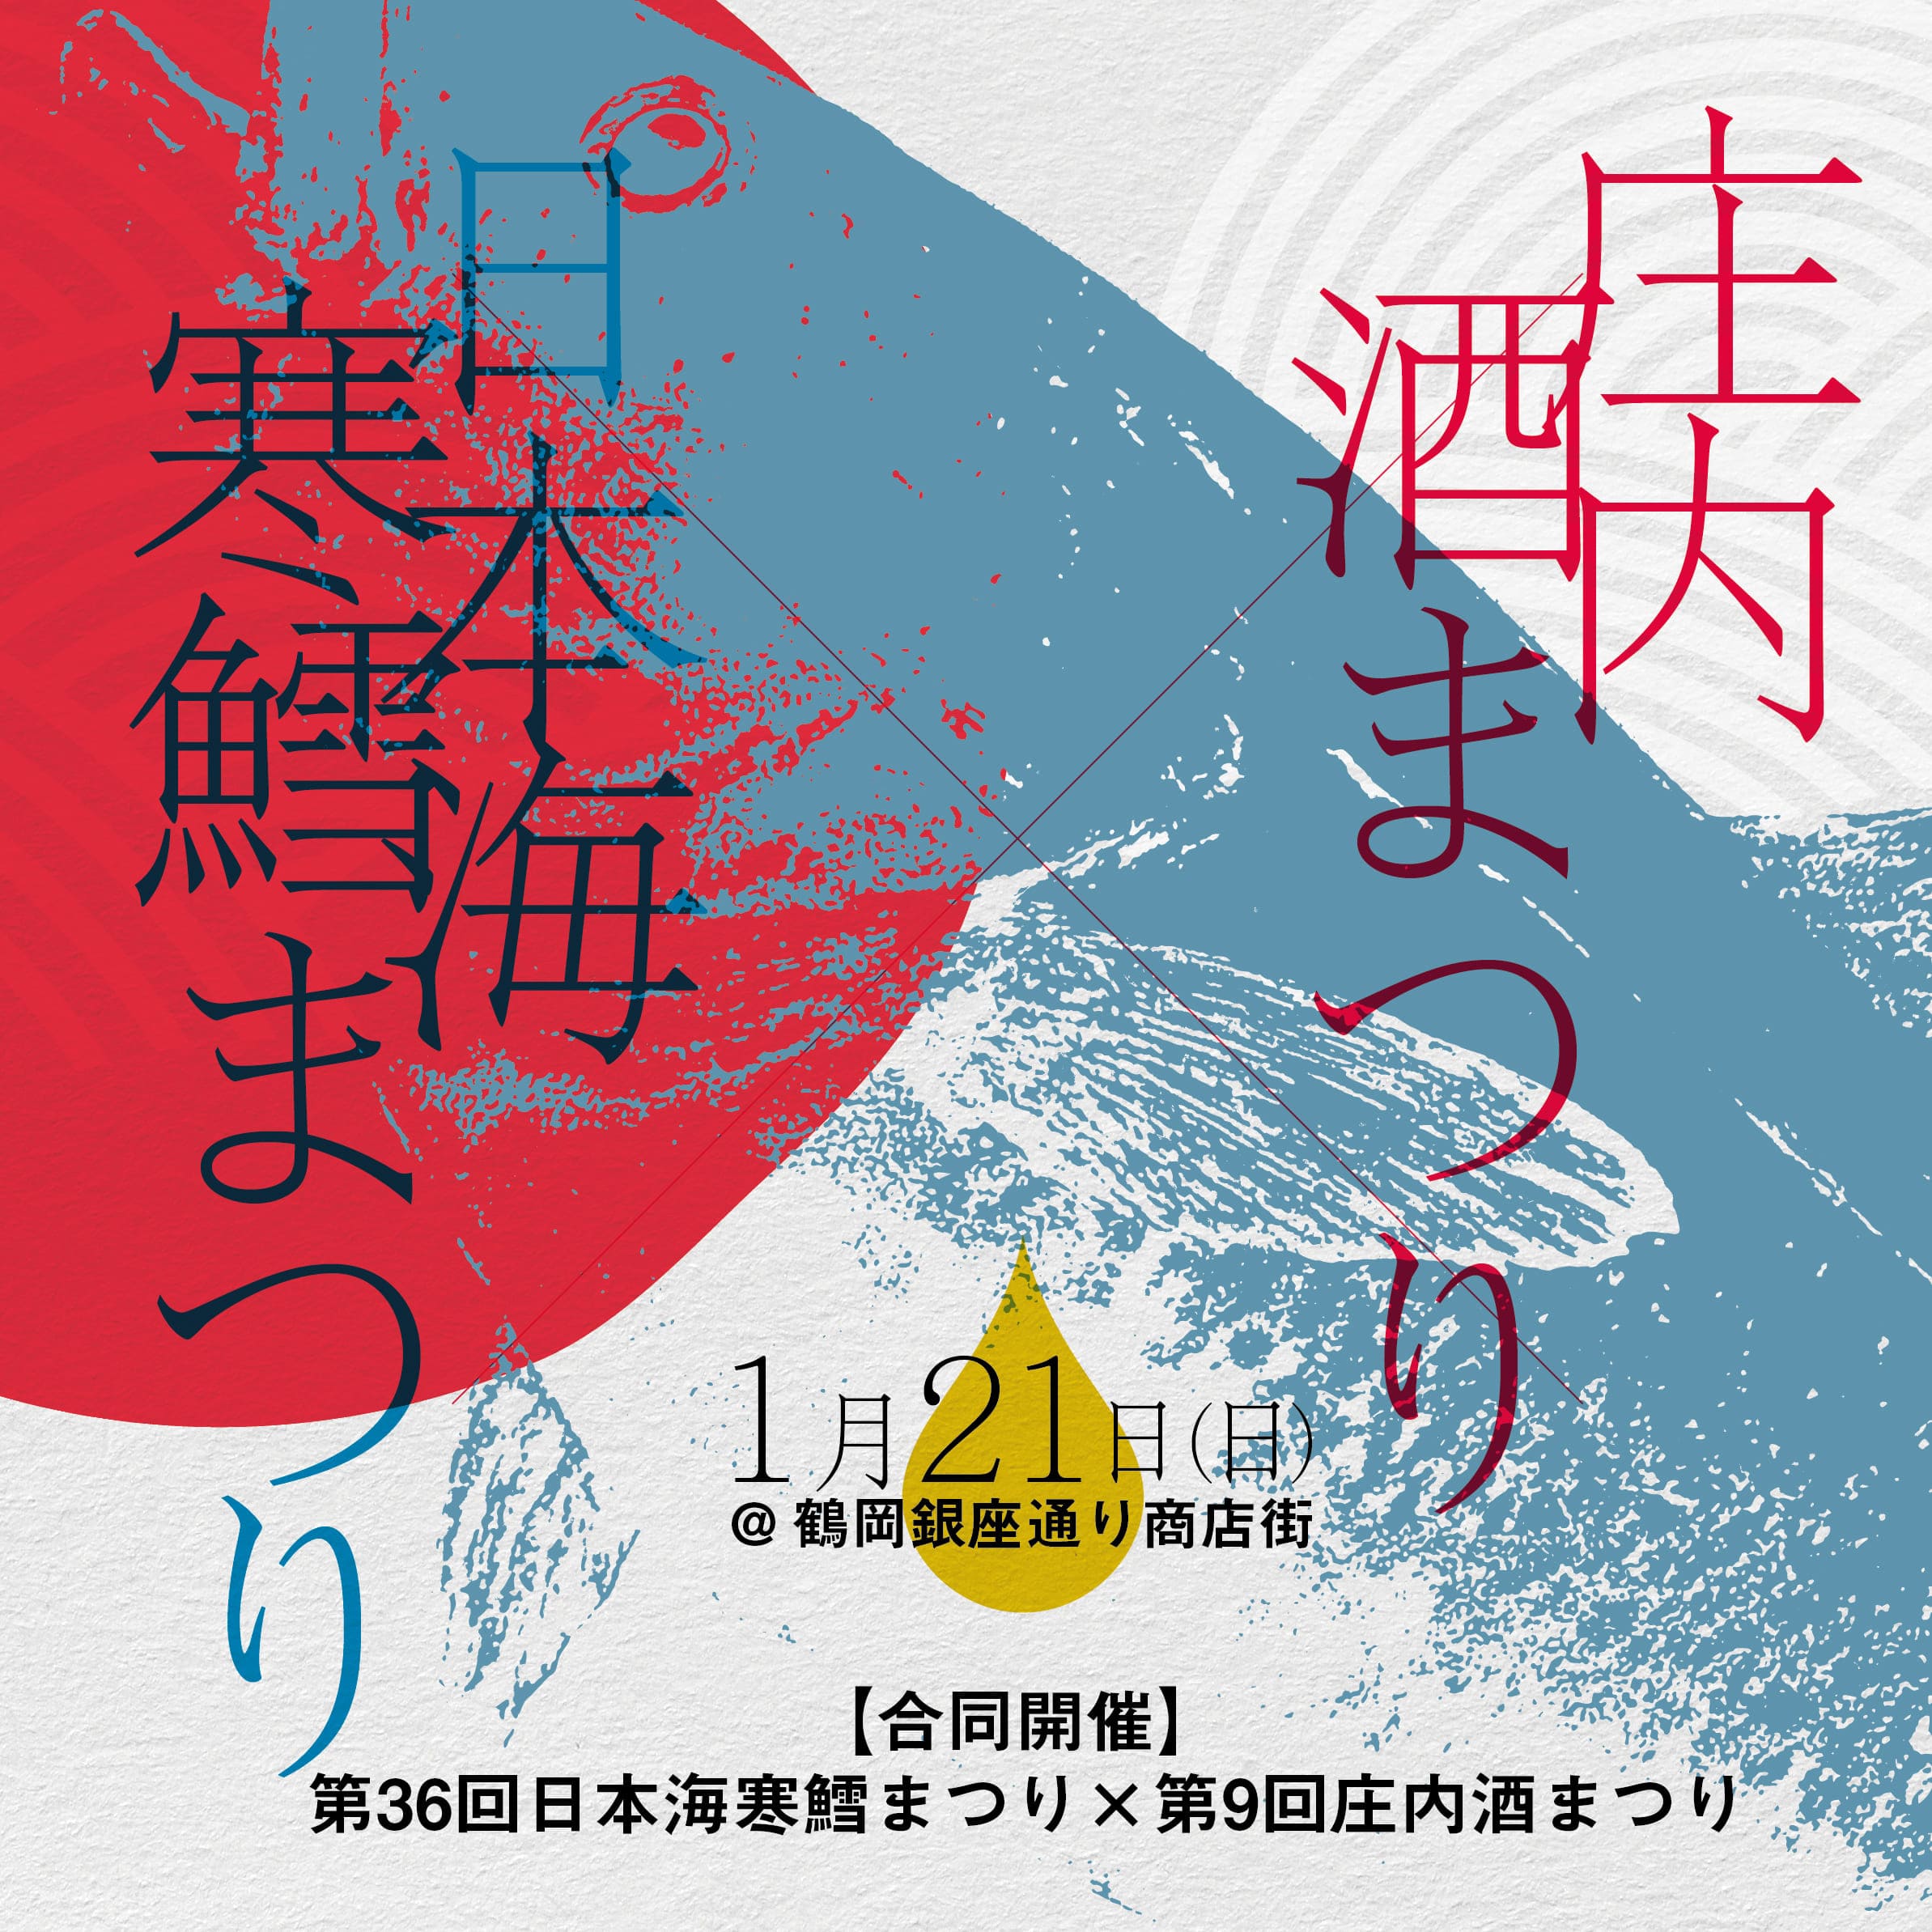 【庄内イベント情報1/21】第36回日本海寒鱈まつり・第9回庄内酒まつりが開催